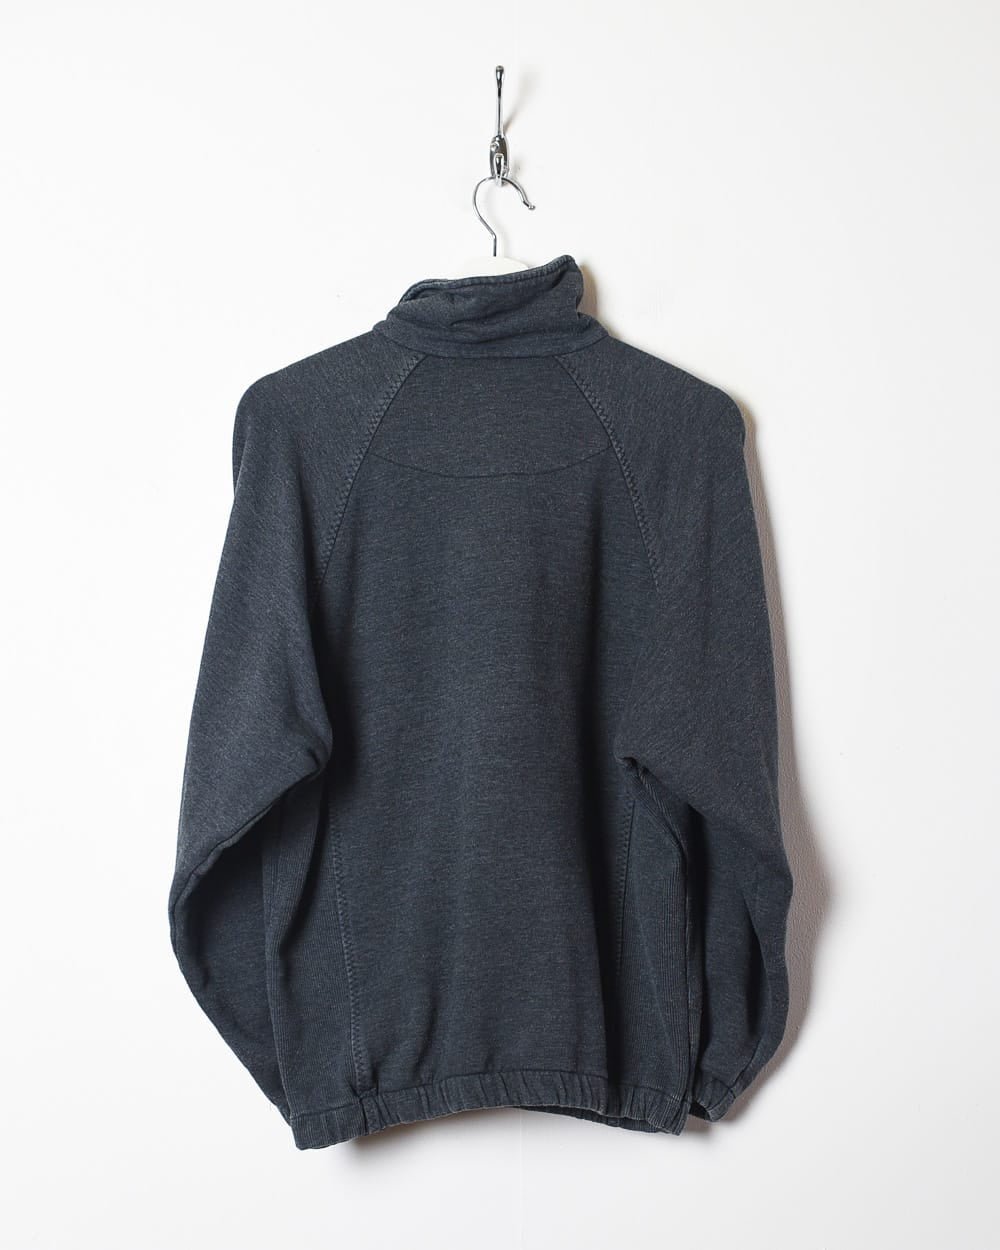 Grey Umbro 1/4 Zip Sweatshirt - Small